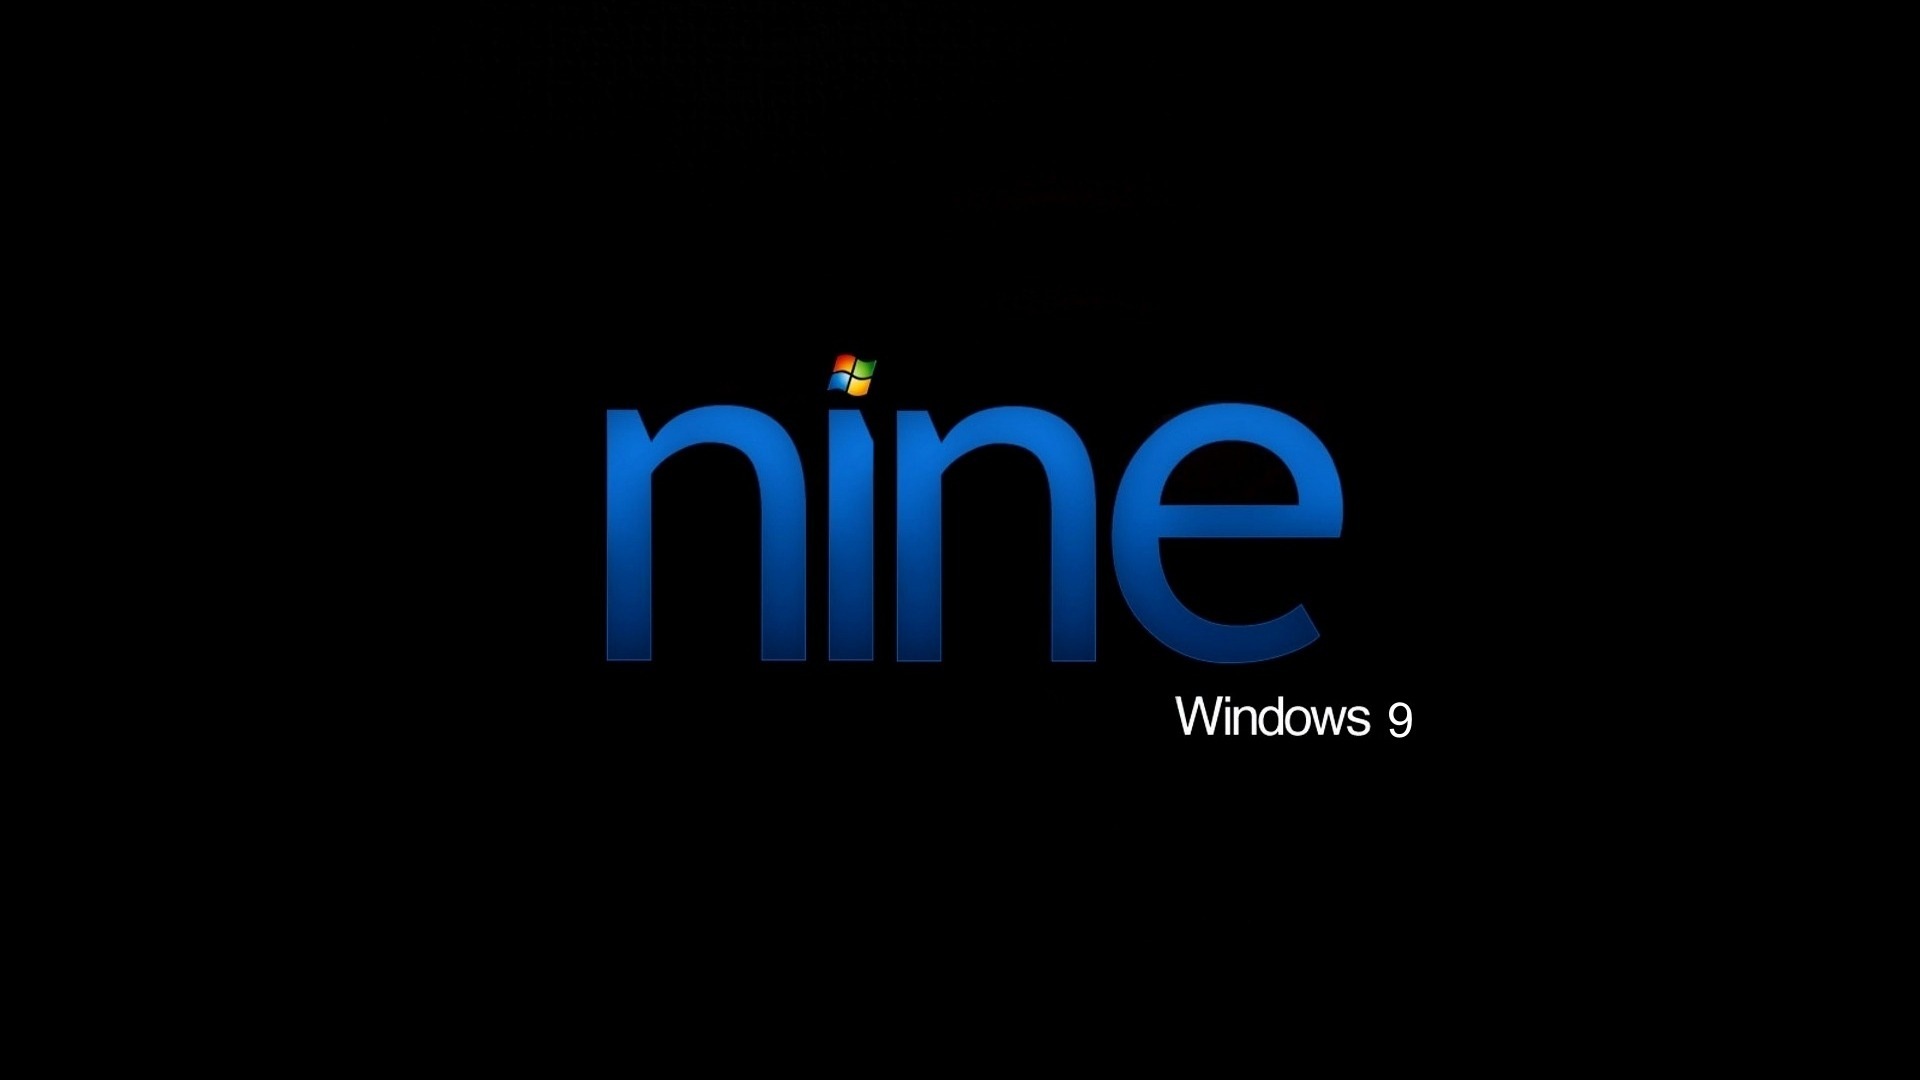 微软 Windows 9 系统主题 高清壁纸18 - 1920x1080